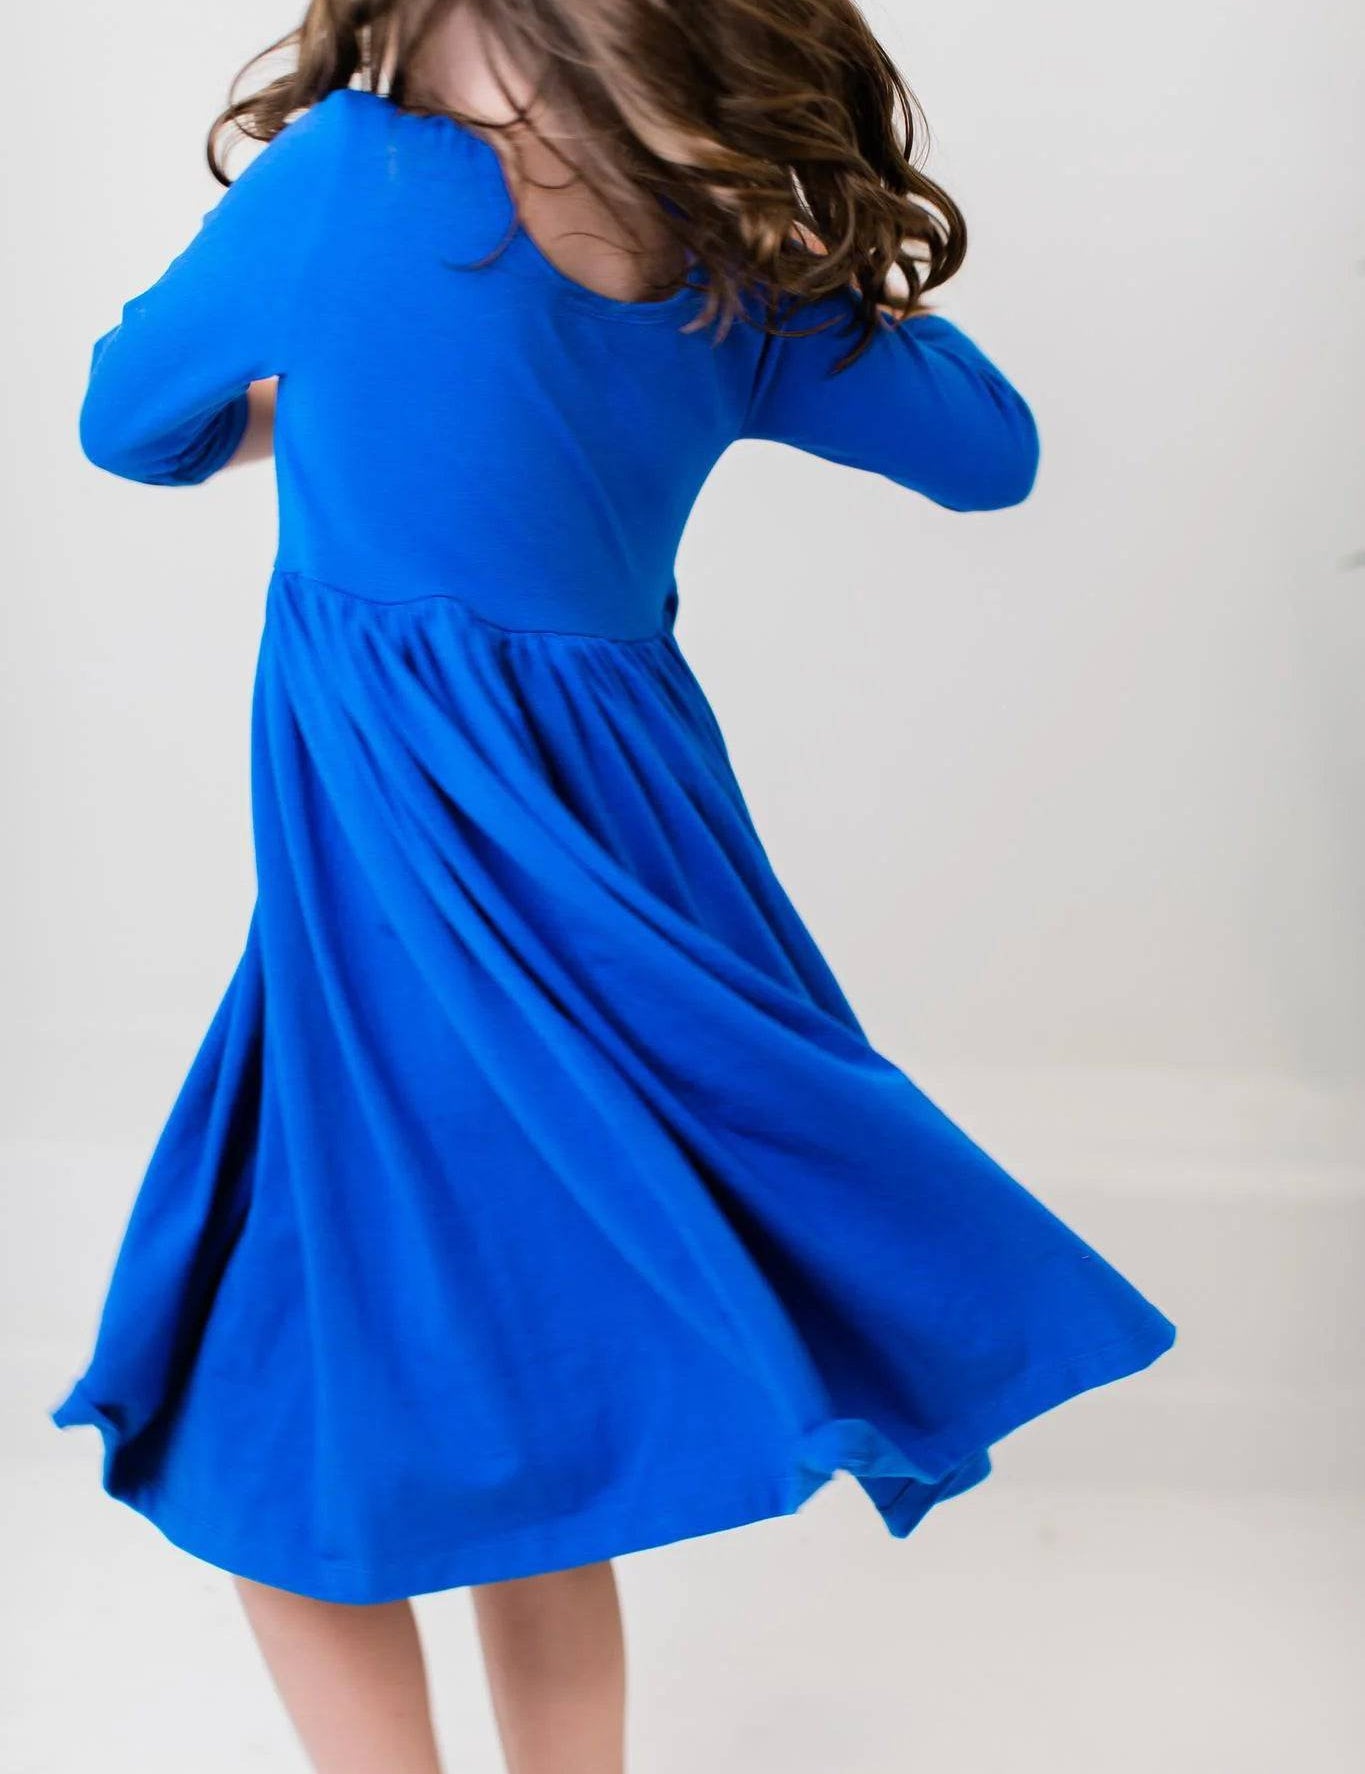 Royal Blue Pocket Twirl Dress - Stella Lane Boutique